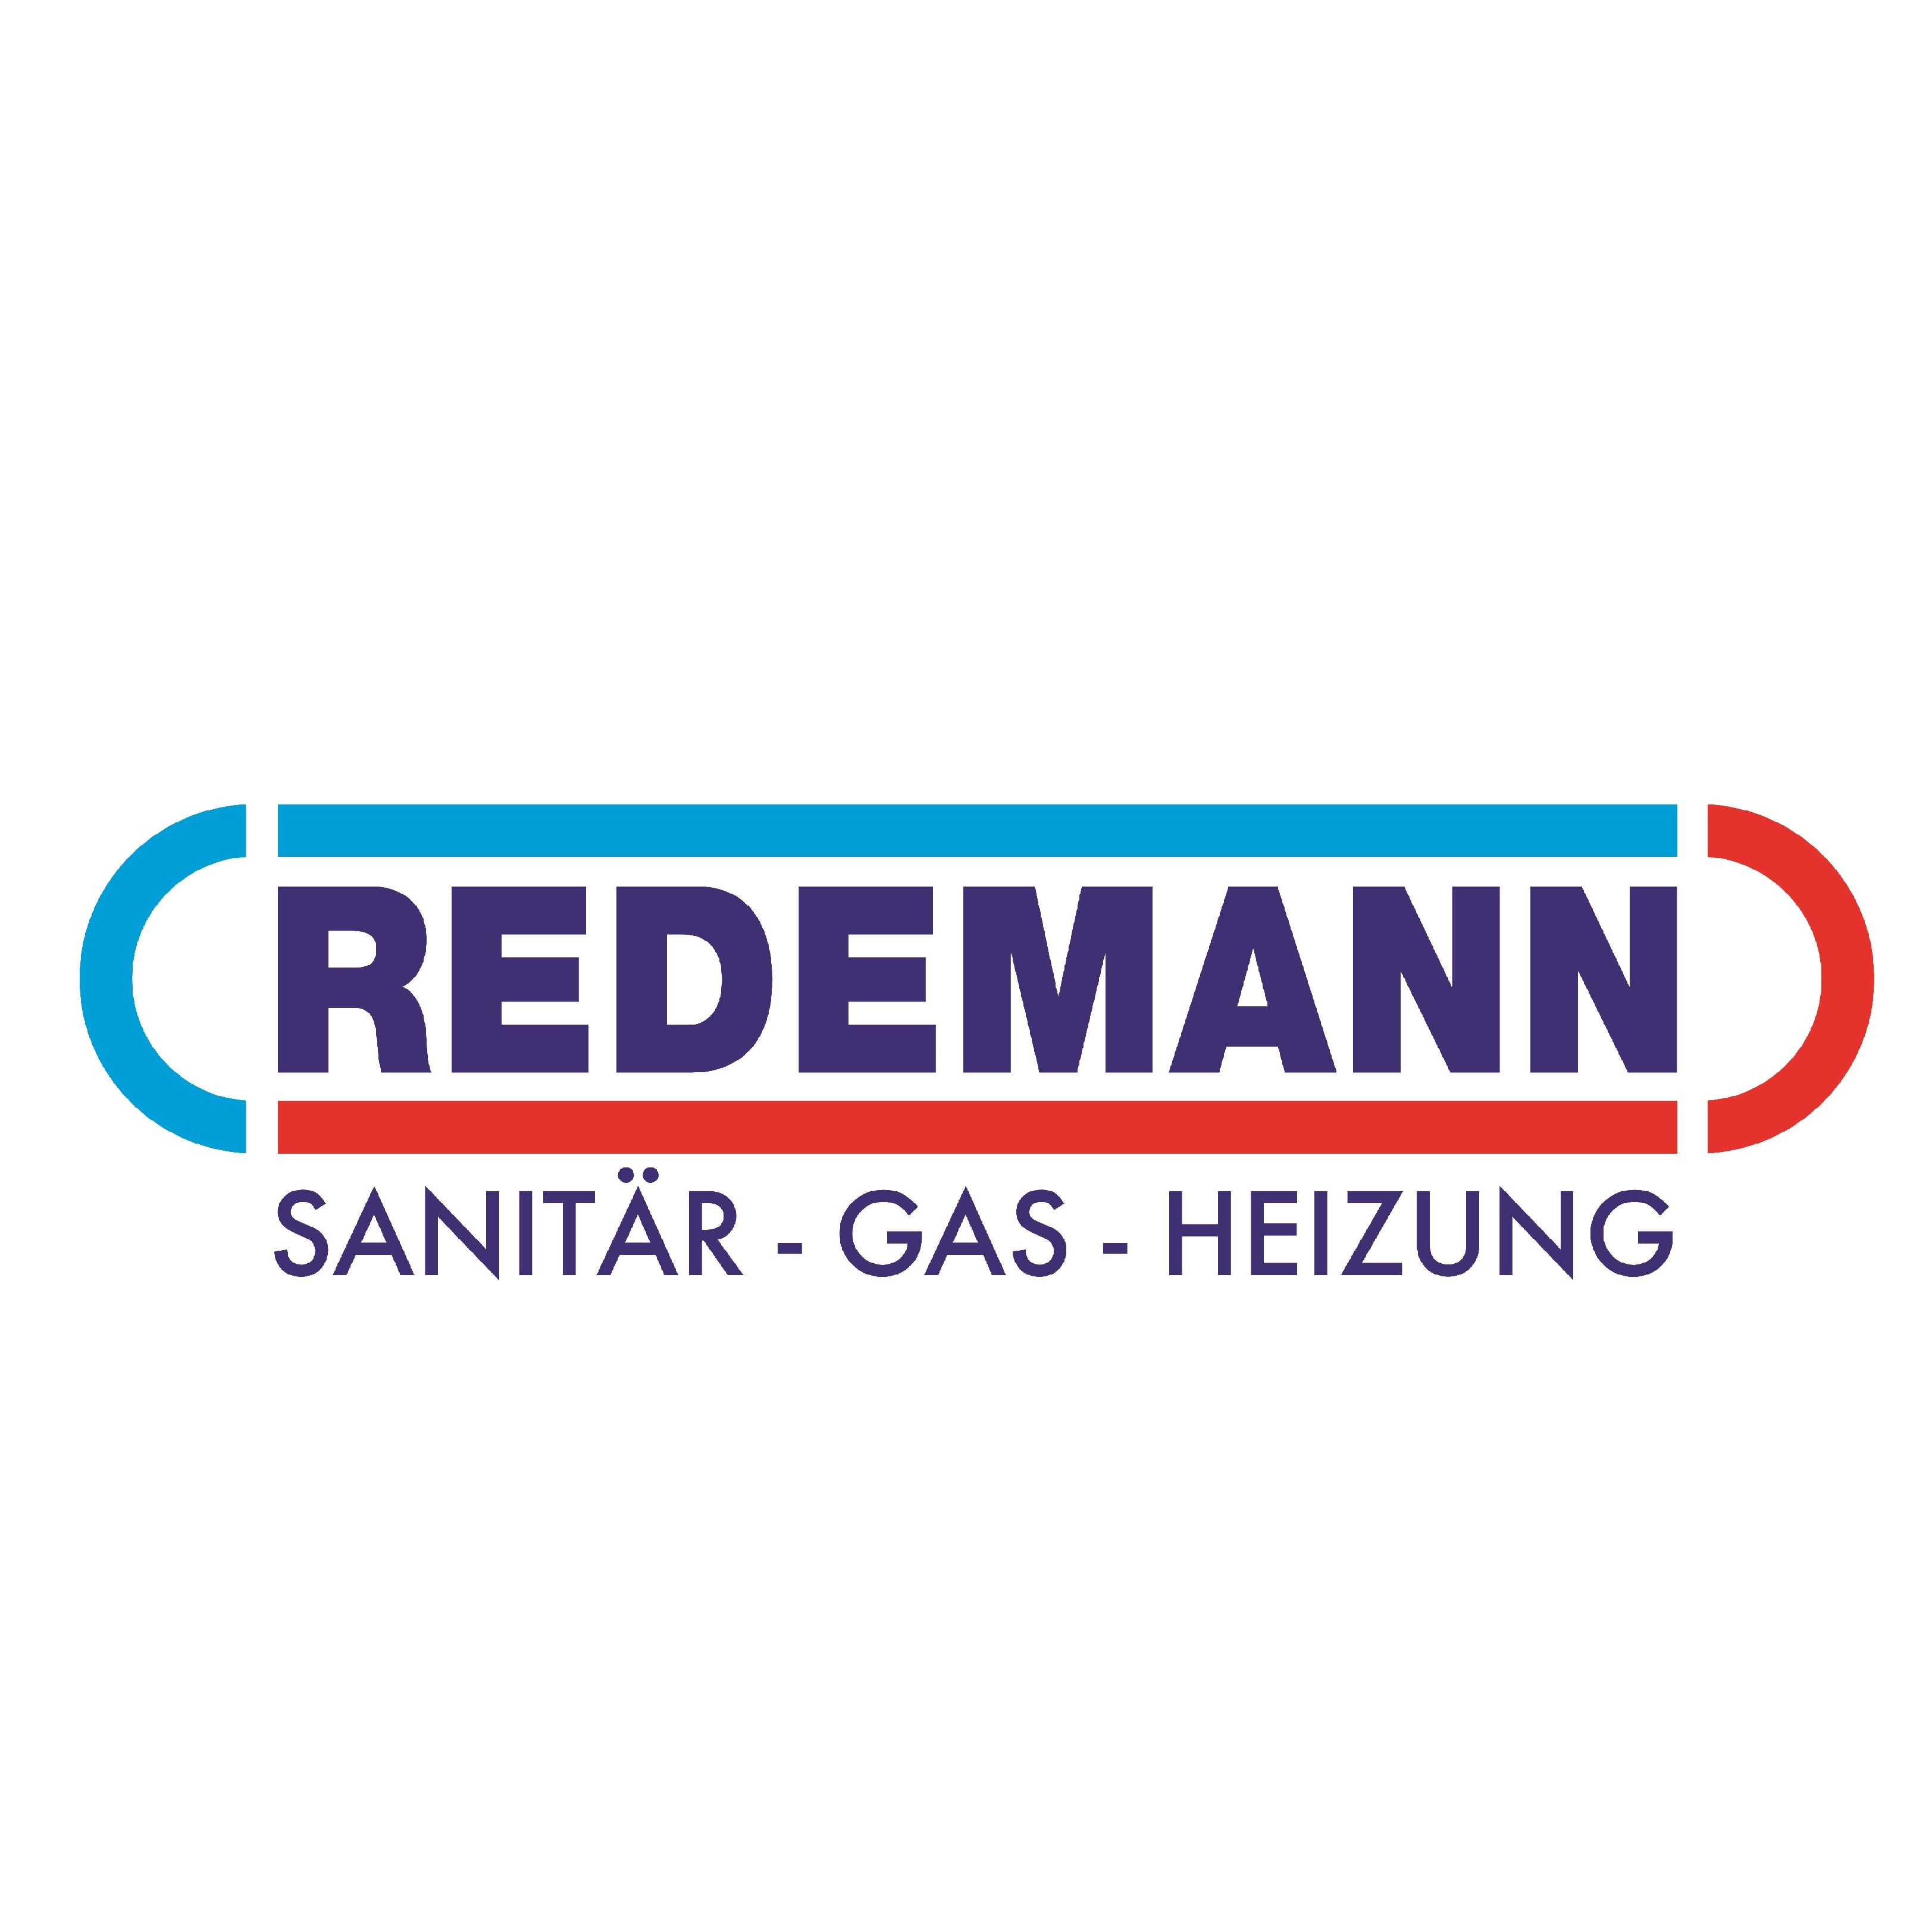 Redemann | Sanitär - Gas - Heizung in Bonn